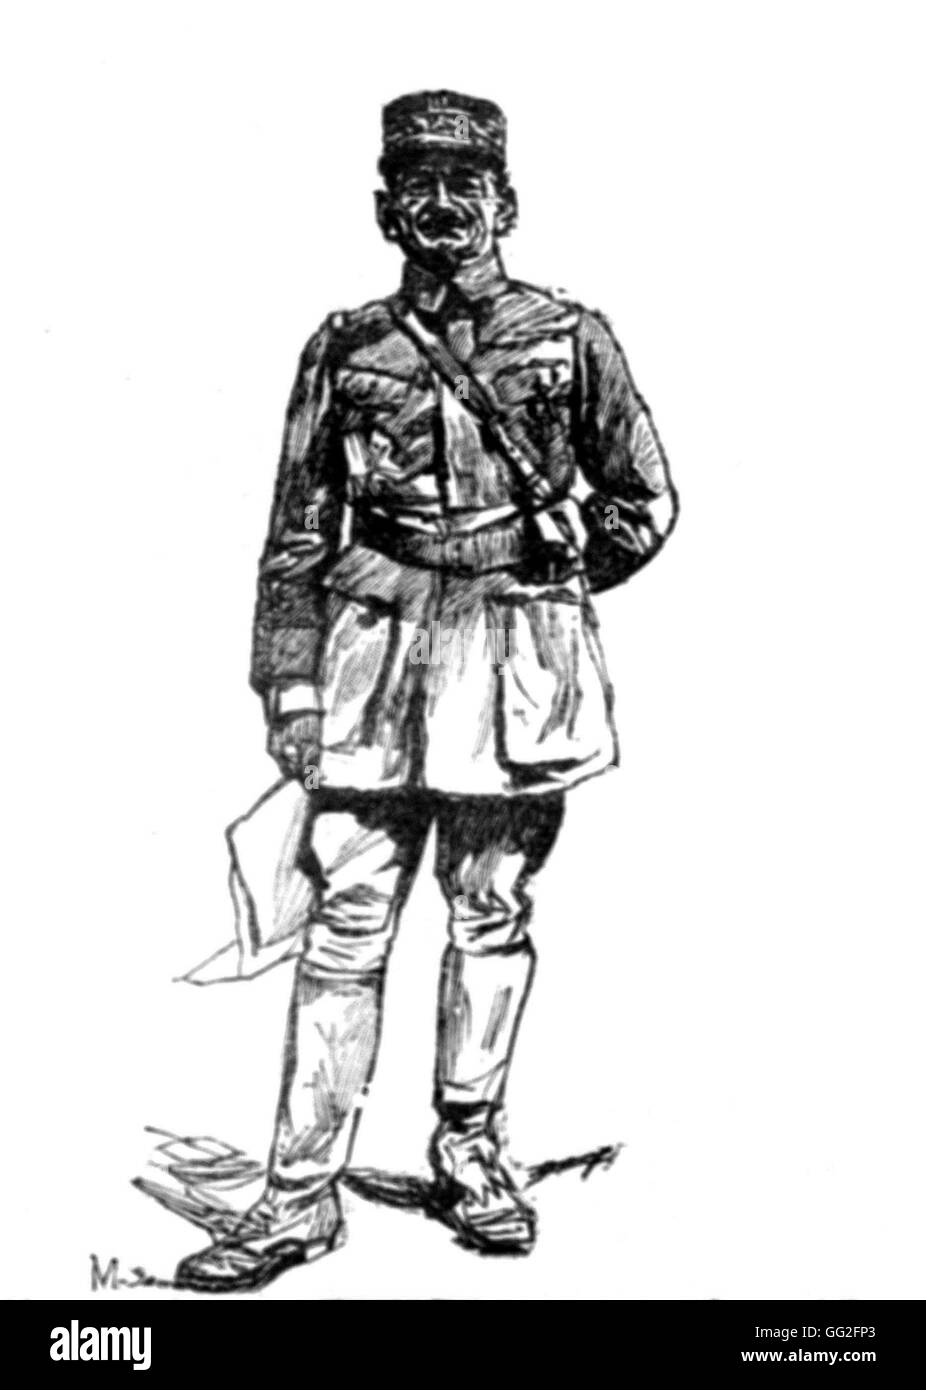 Ersten Weltkrieg. General Mangin unter Befehl der 10. Armee, 16. Juni 1918, die in der zweiten Schlacht an der Marne kämpfen würde. Zeichnung von Lucien Jonas. Tiefdruck de Malcouronne. Stockfoto